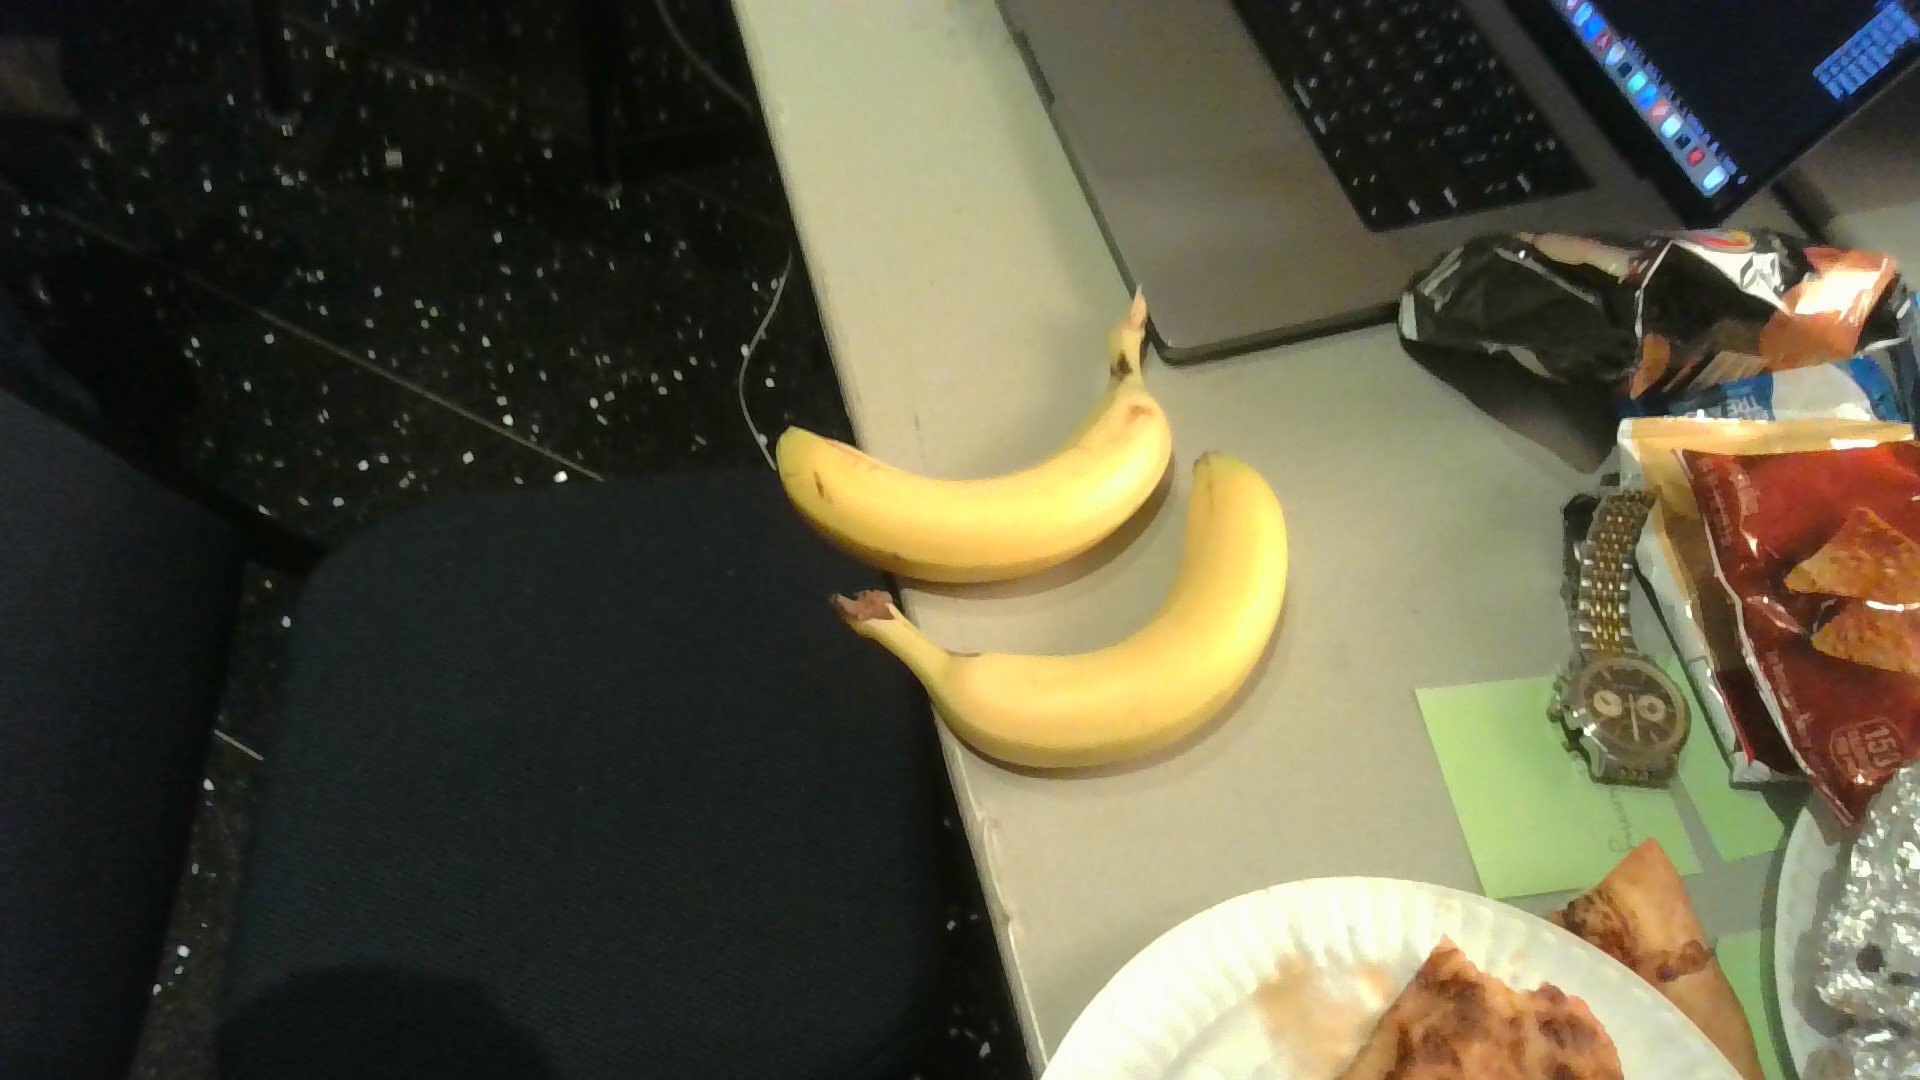 2 banana 1 dorito